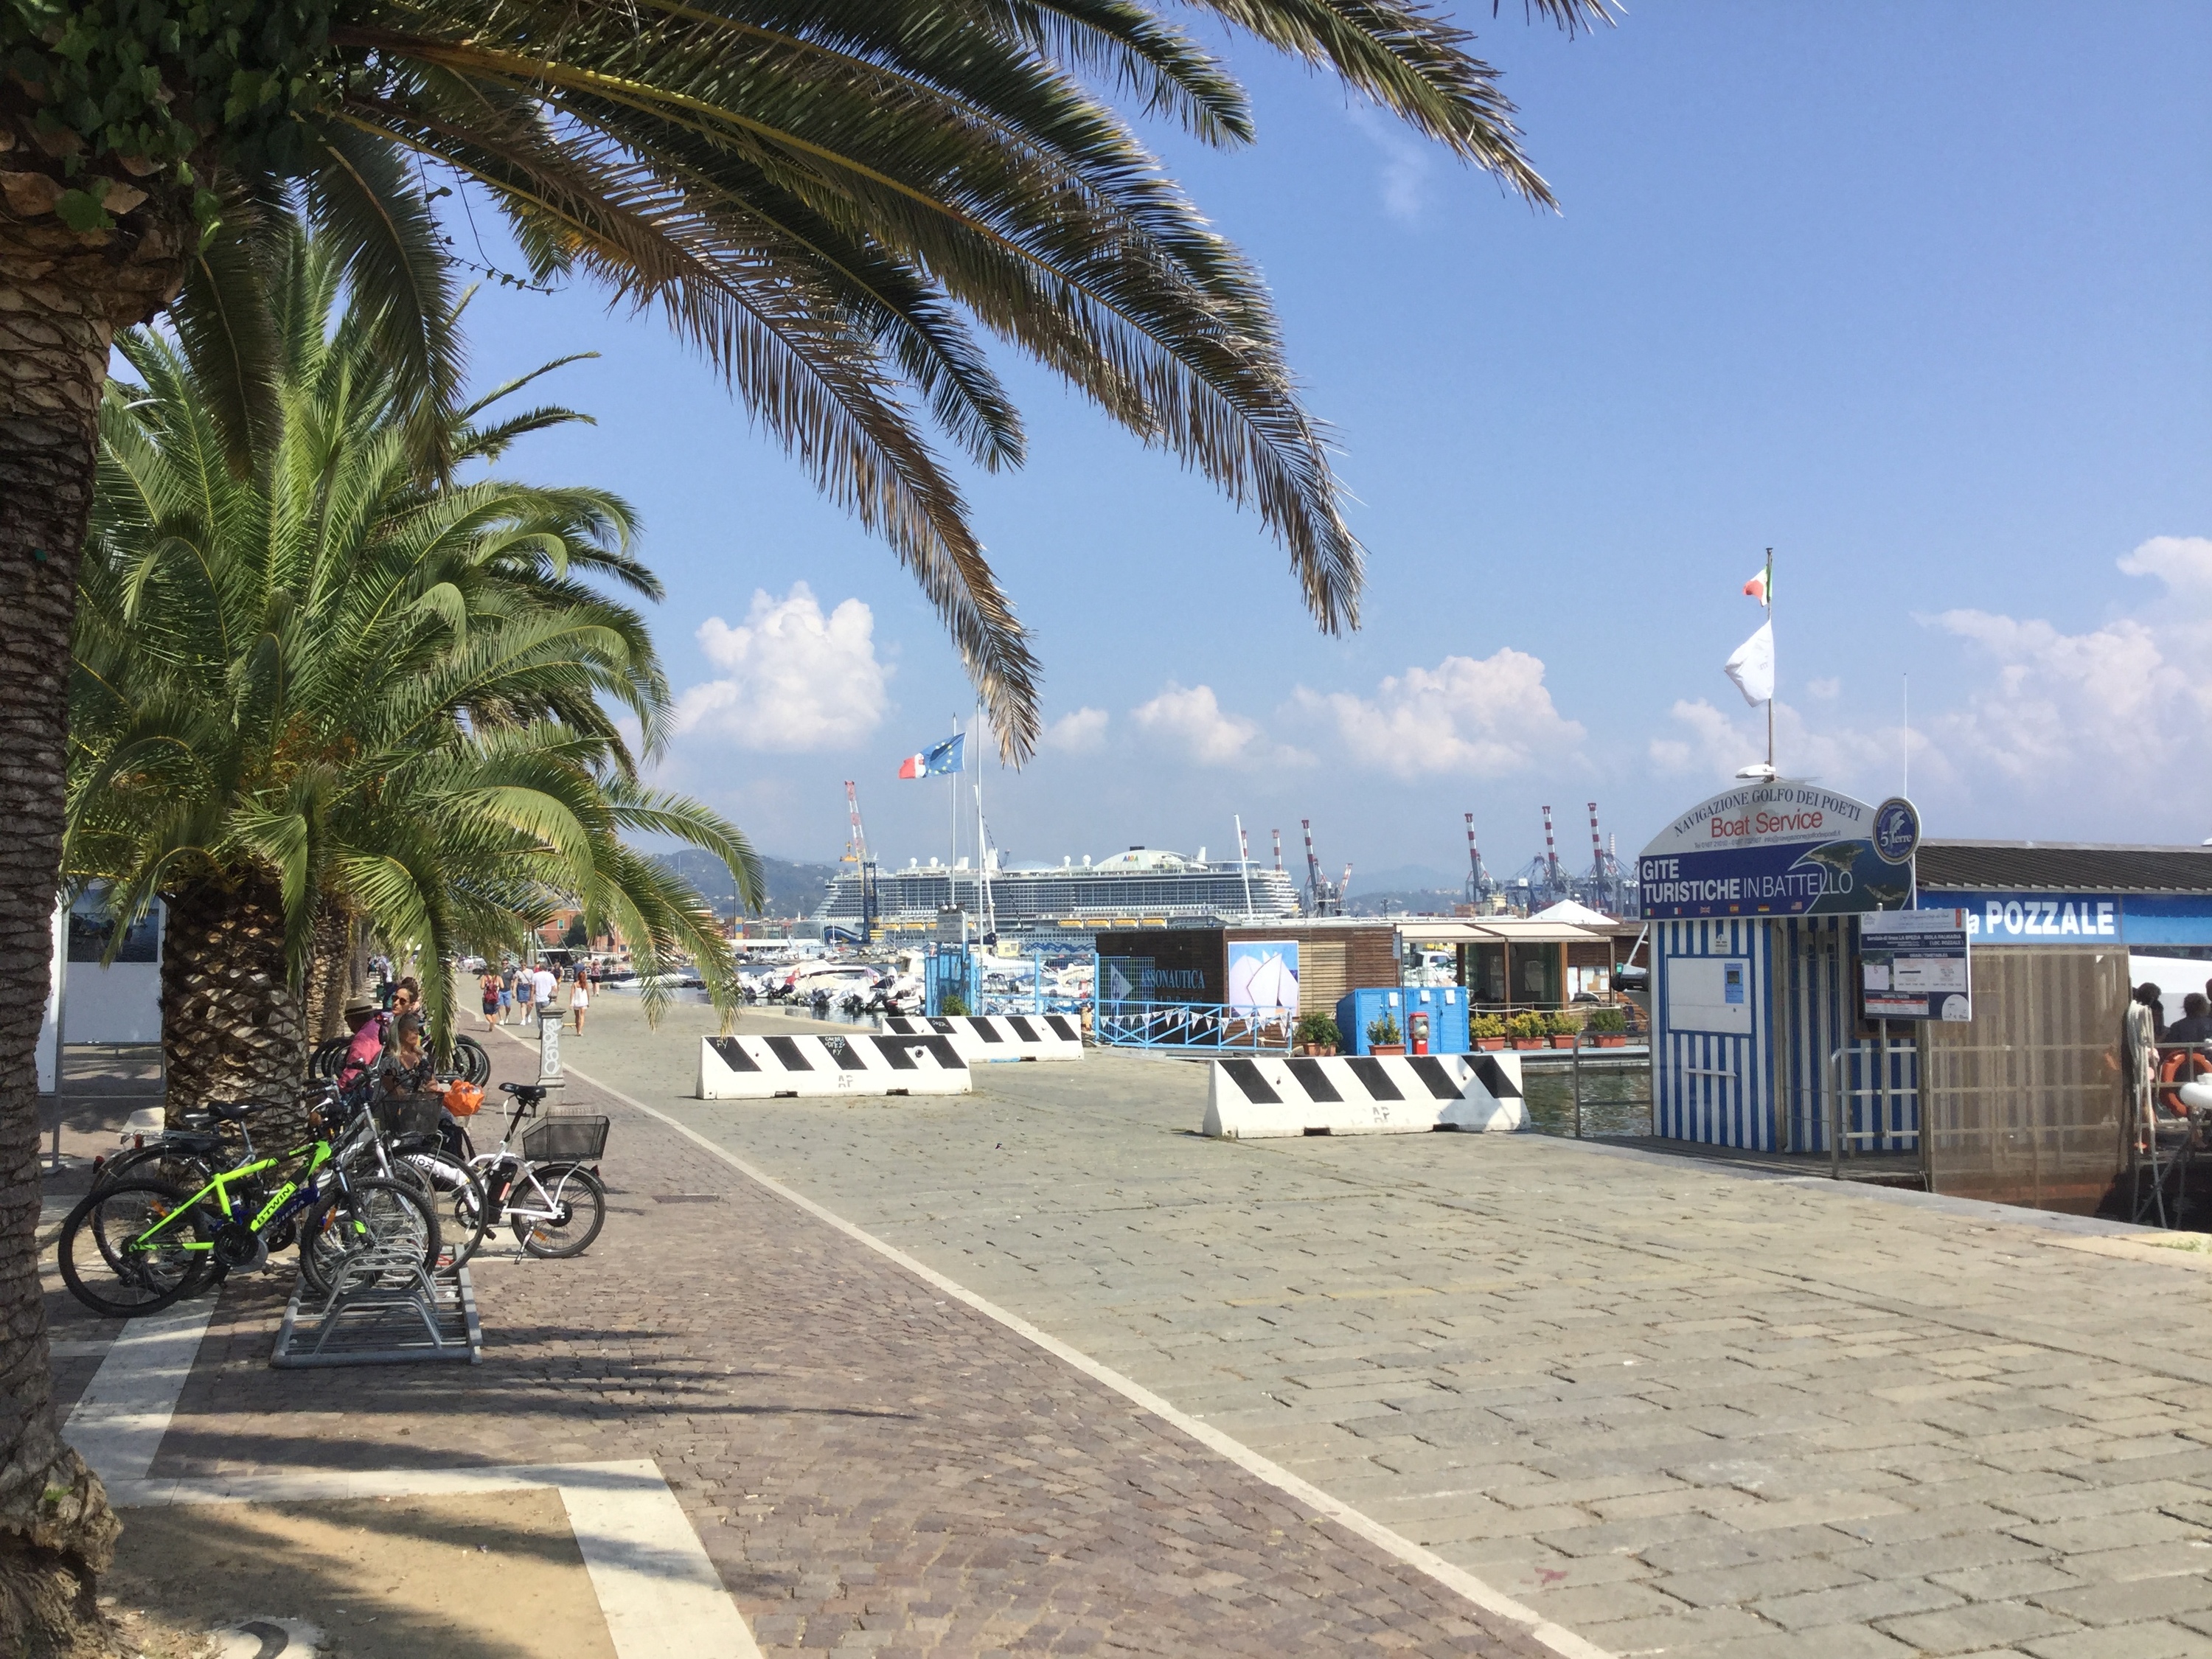 AIDAnova im Hafen von La Spezia bei herrlichem Wetter